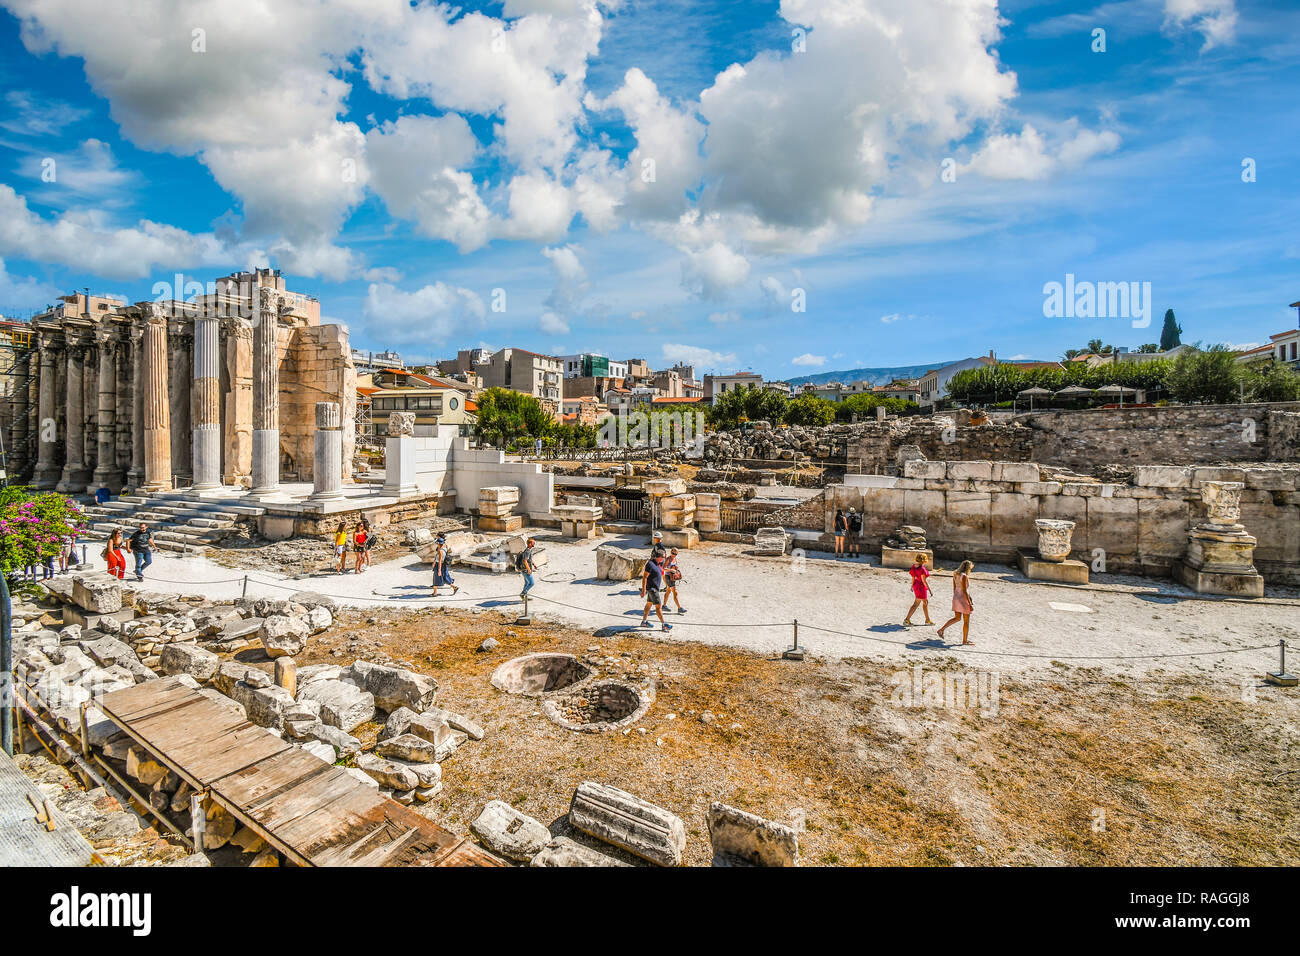 Les touristes visiter sur l'ancien mur ouest de bibliothèque d'Hadrien à l'Agora romaine, avec le populaire quartier du Plaka derrière, à Athènes, Grèce. Banque D'Images